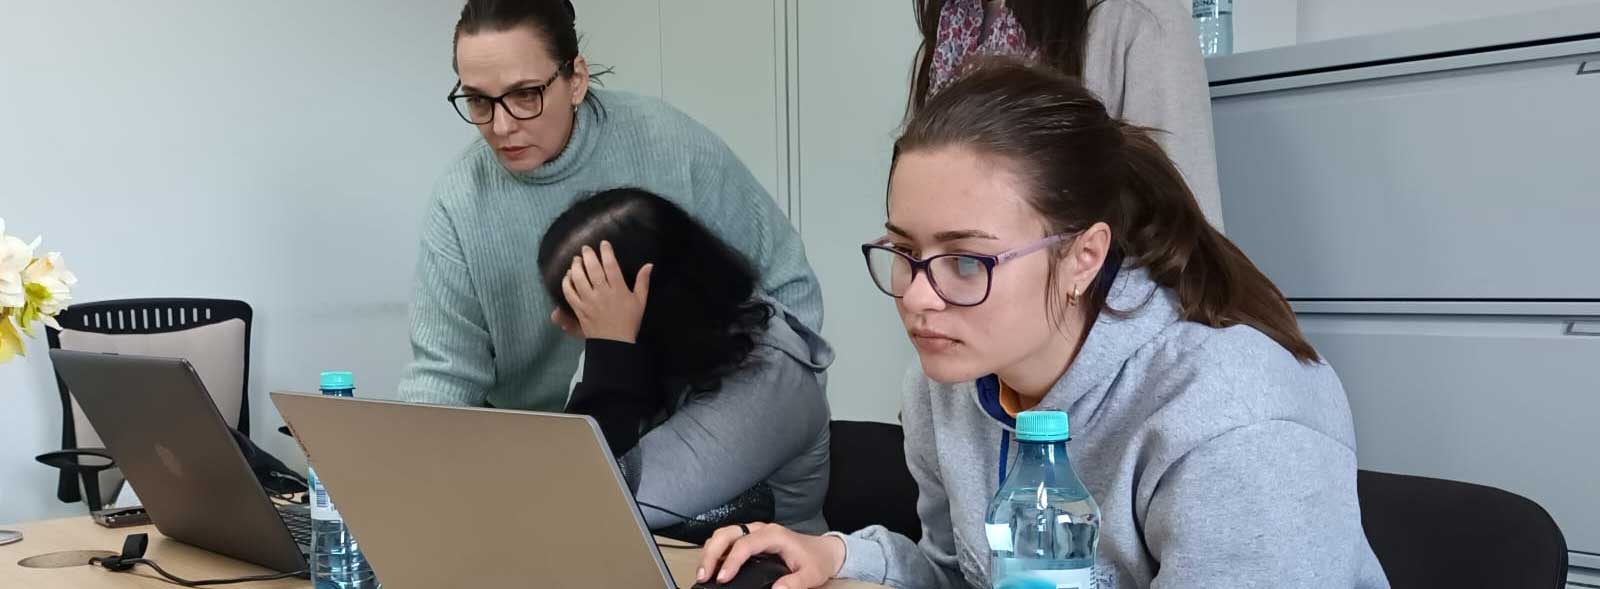 Estudiantes rumanas siguiendo el curso con ayuda del dinamizador